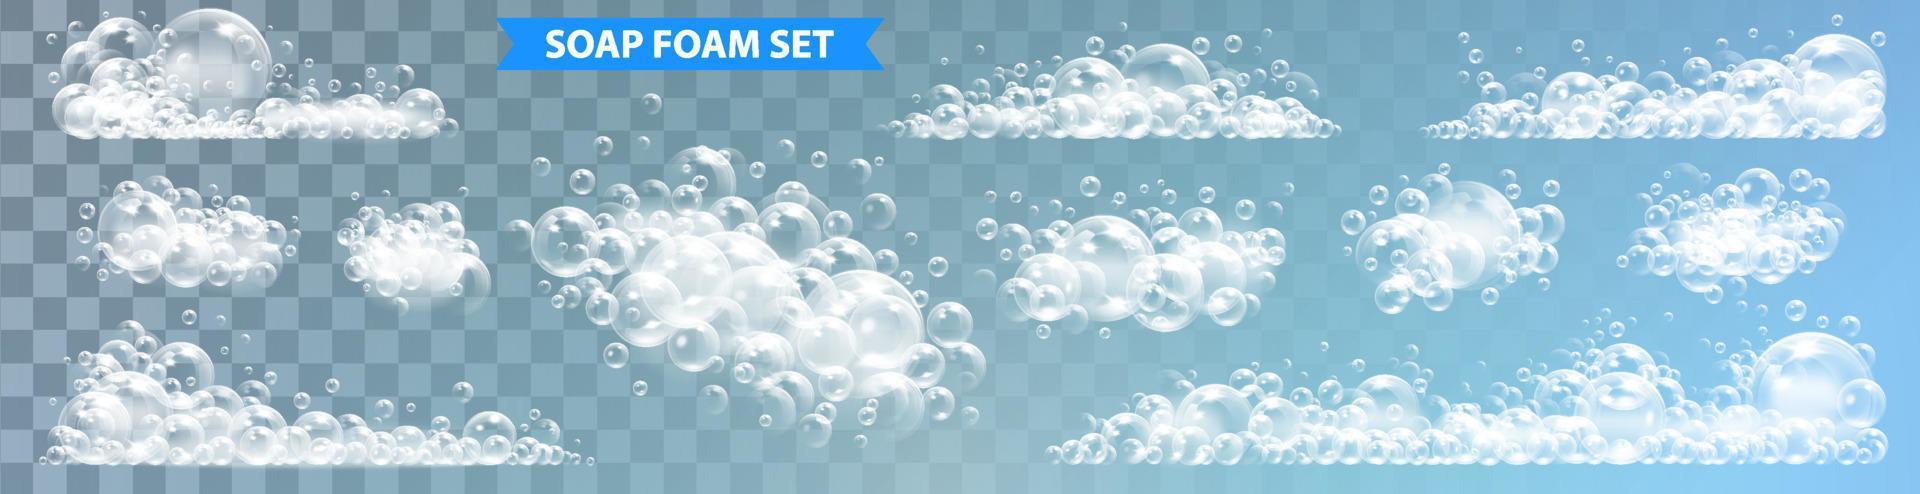 Sabonete espuma com bolhas isolado vetor ilustração